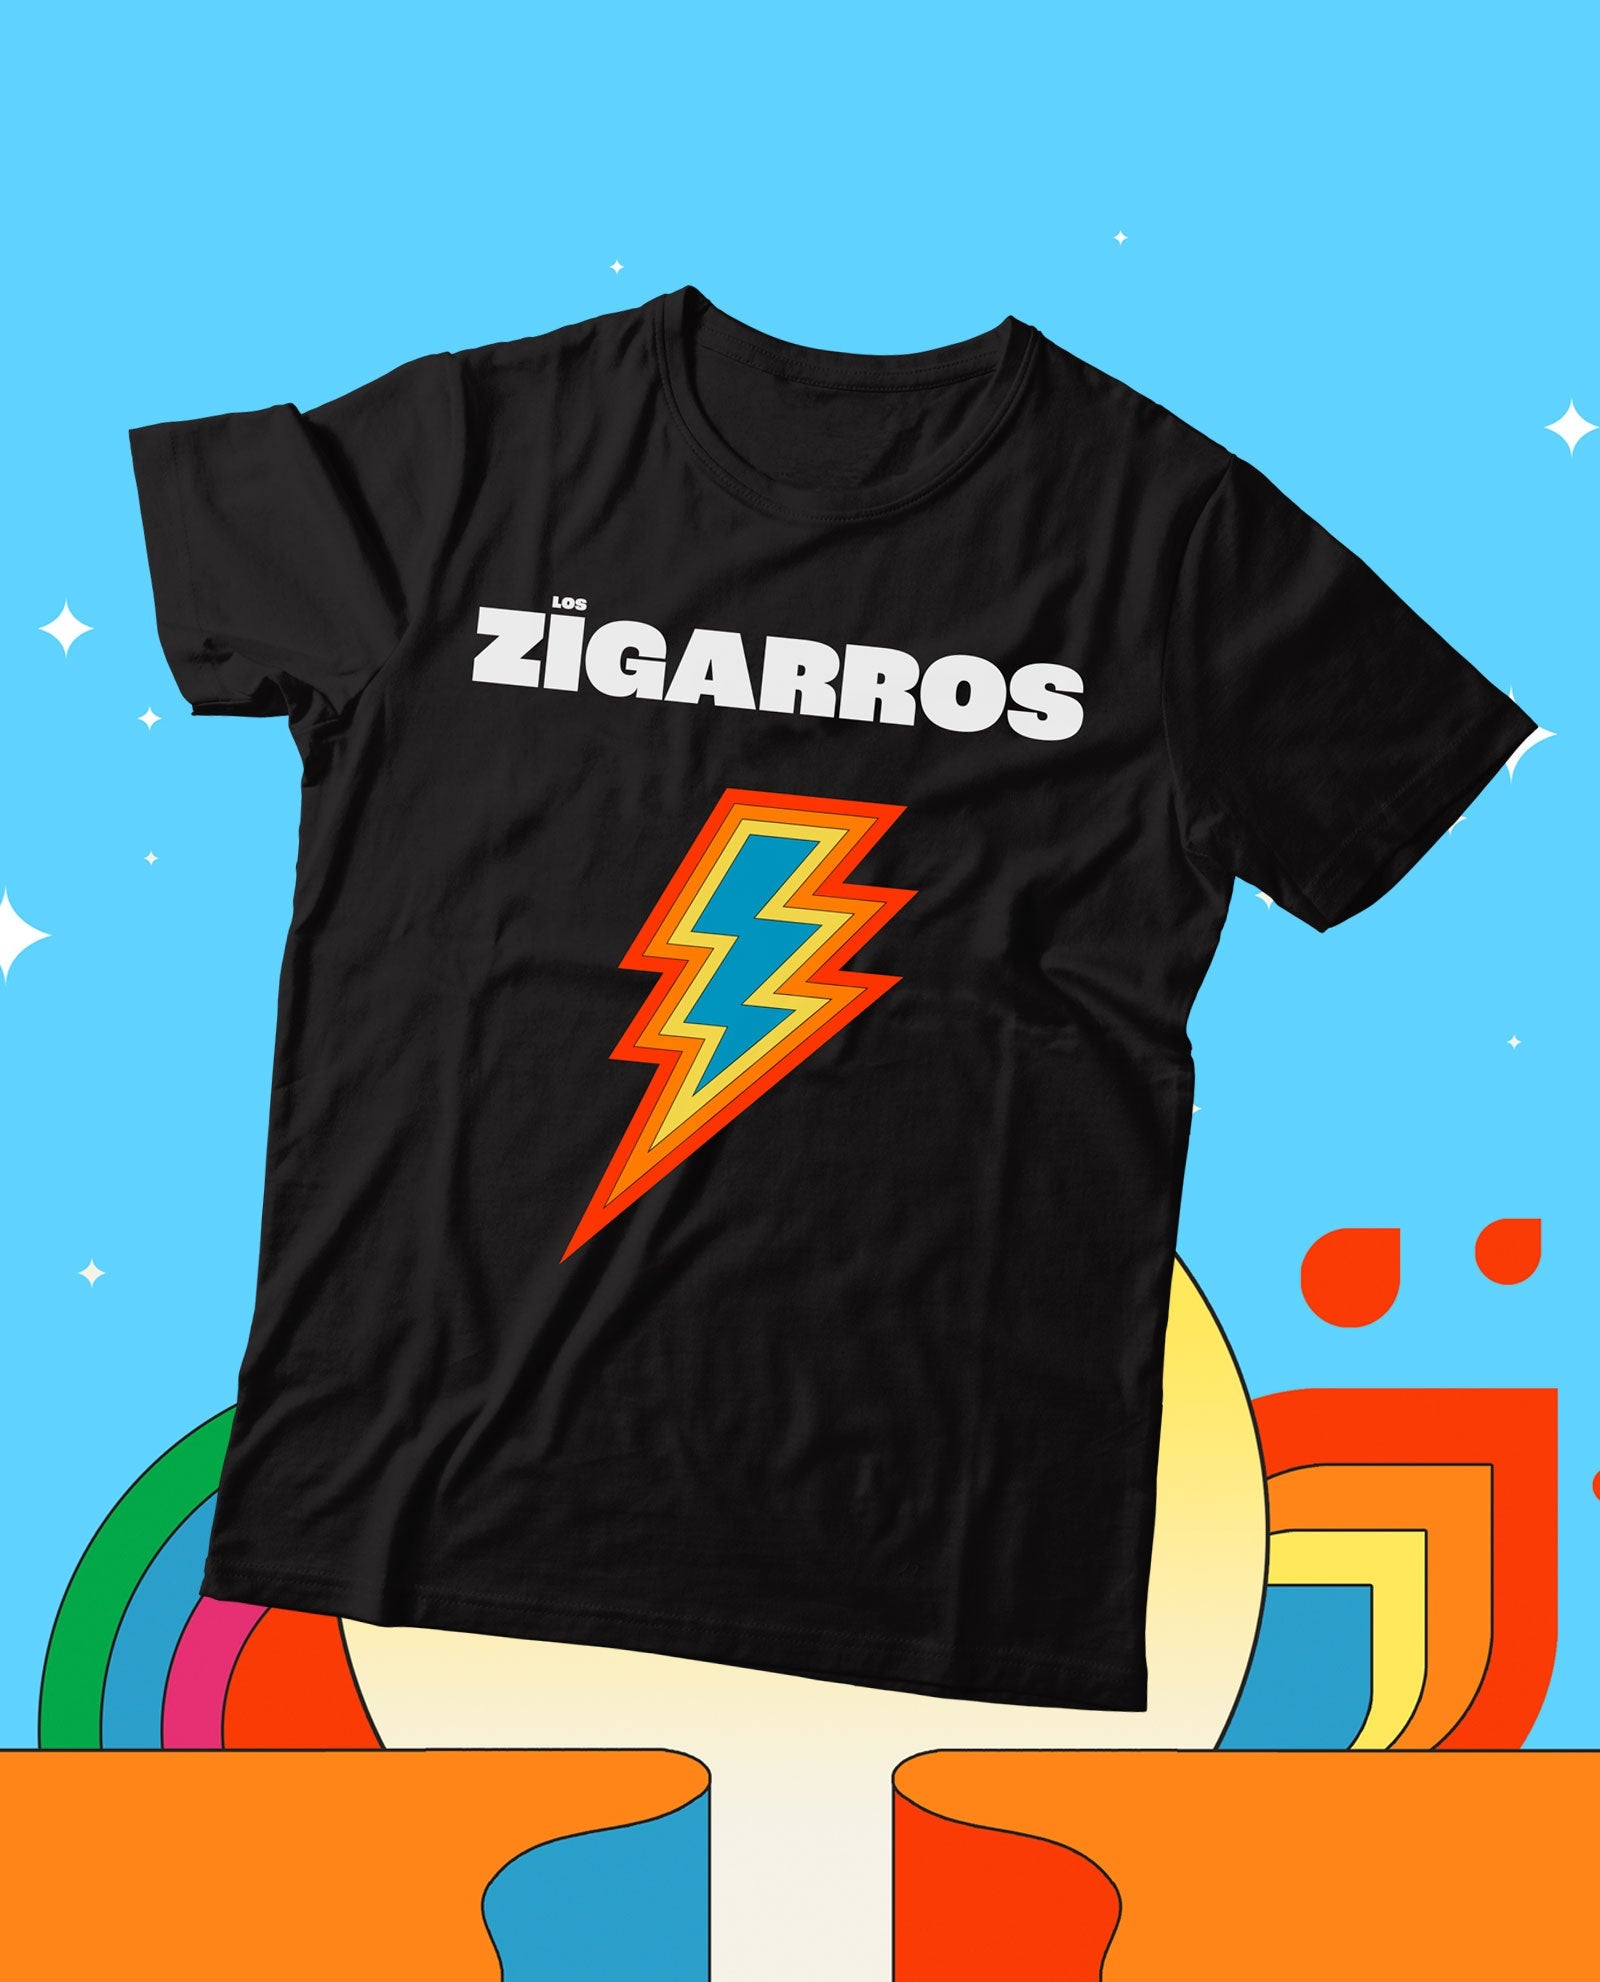 Los Zigarros - Camiseta Edición Limitada "Showcase Madrid 05/10" Sólo venta en web. Hasta fin de existencias - D2fy · Rocktud - Los Zigarros